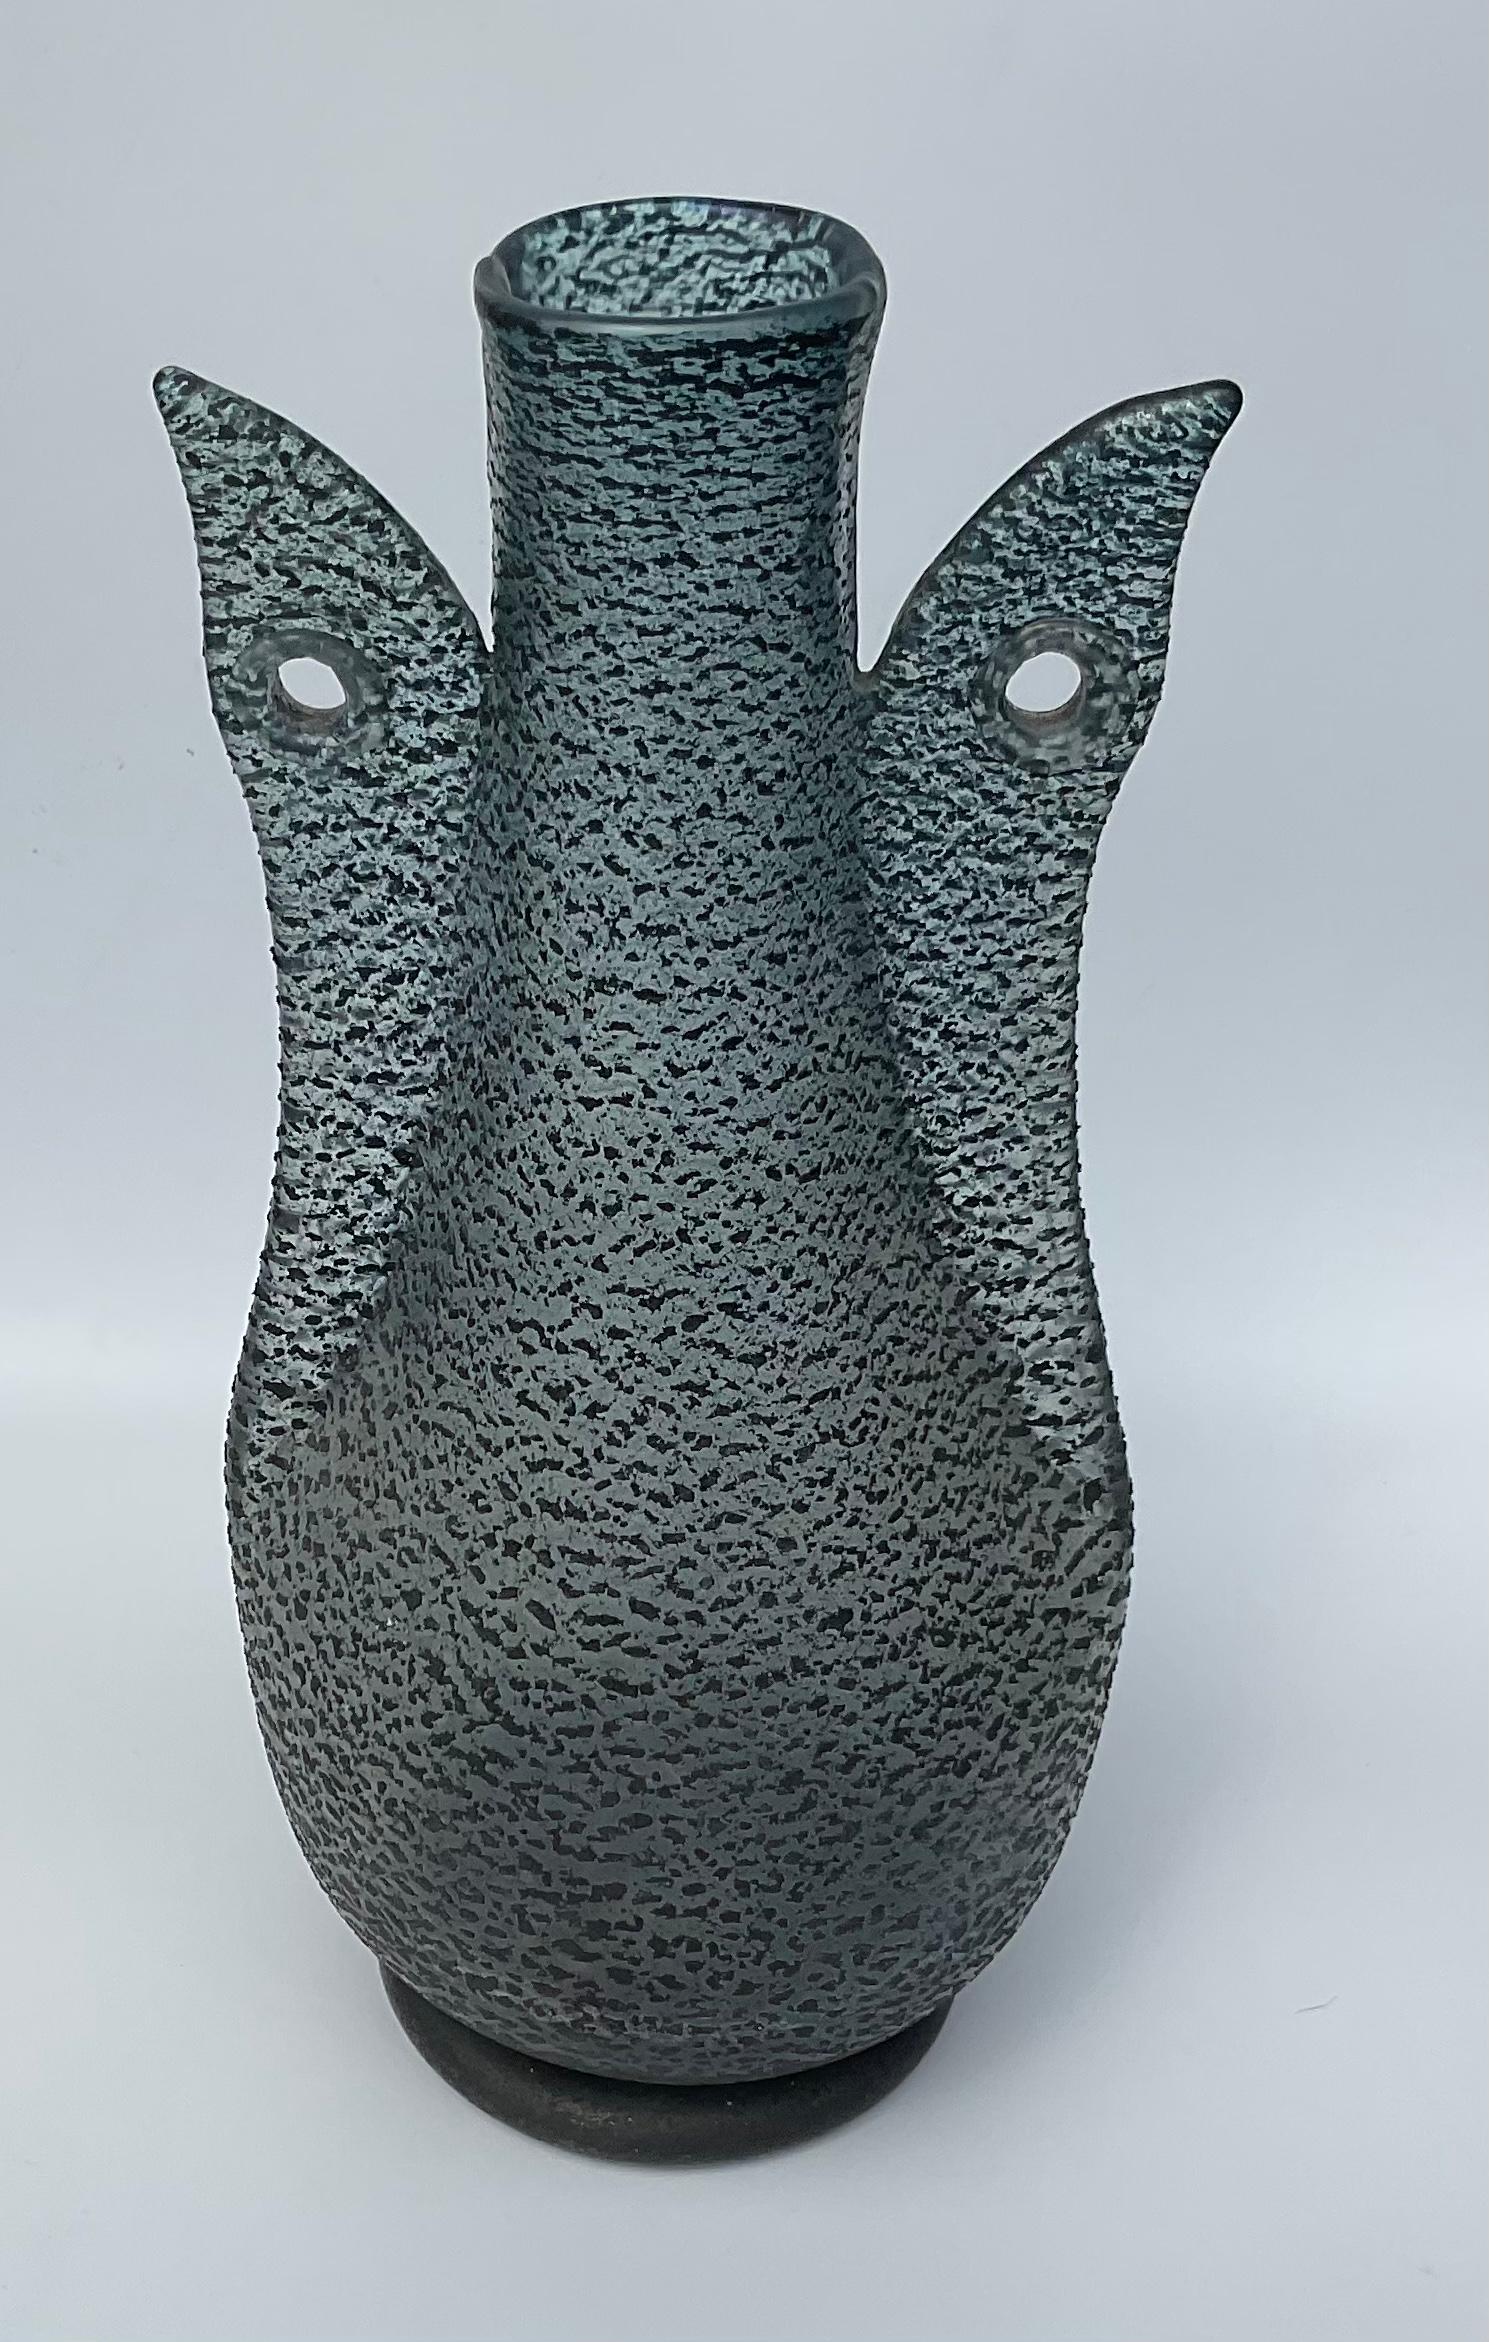 Große Barbarico-Vase mit doppeltem Vogel, entworfen von Ercole Barovier für Barovier und Toso. Schwarzes, strukturiertes Glas mit irisierender Oberfläche. Die Vase ist signiert mit aufgeklebtem Label des Herstellers aus Papier am Boden: [Barovier &